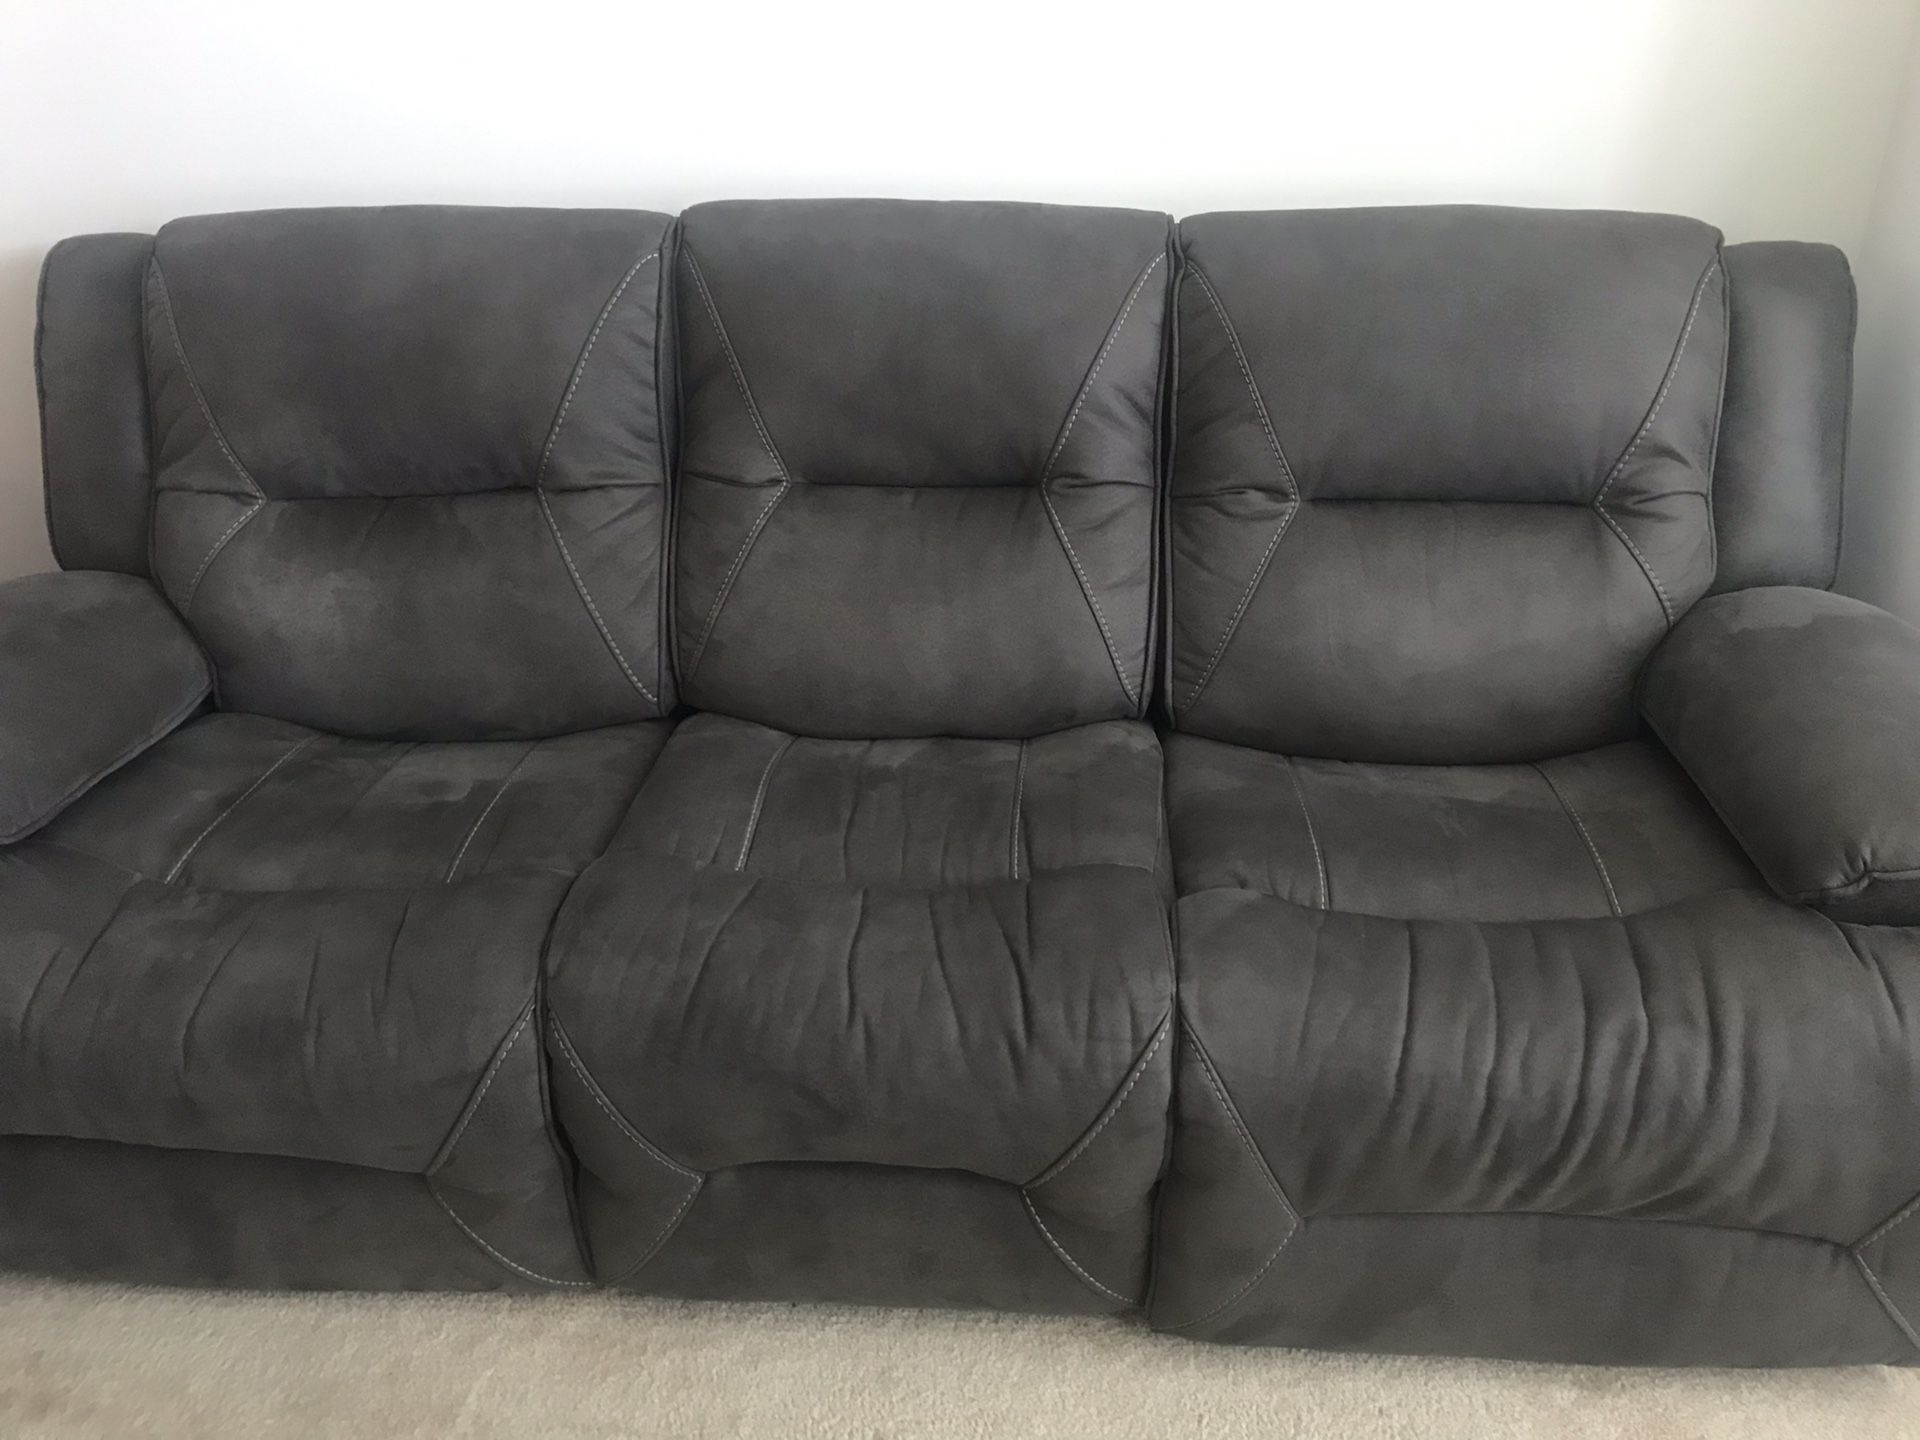 Super comfortable reclining sofa, dark grey suede